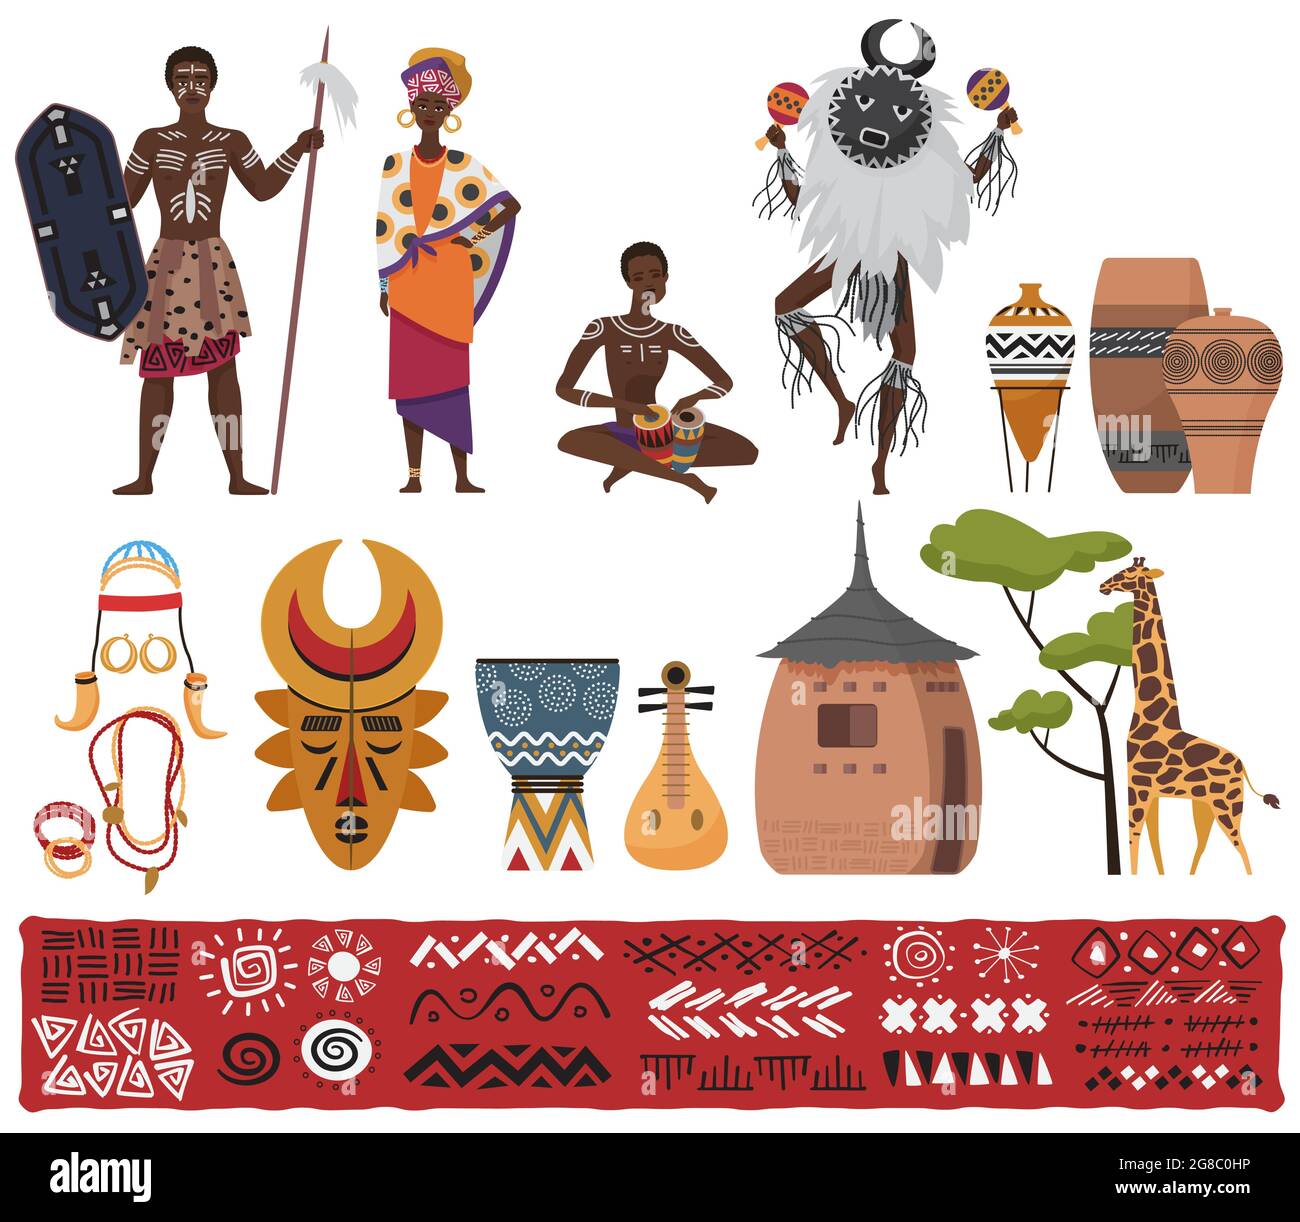 Les peuples ethniques africains, la culture des éléments tribaux, Voyage en Afrique du Sud définir l'illustration vectorielle. Dessin animé africain, personnages en costume traditionnel, totem isolé sur blanc Illustration de Vecteur